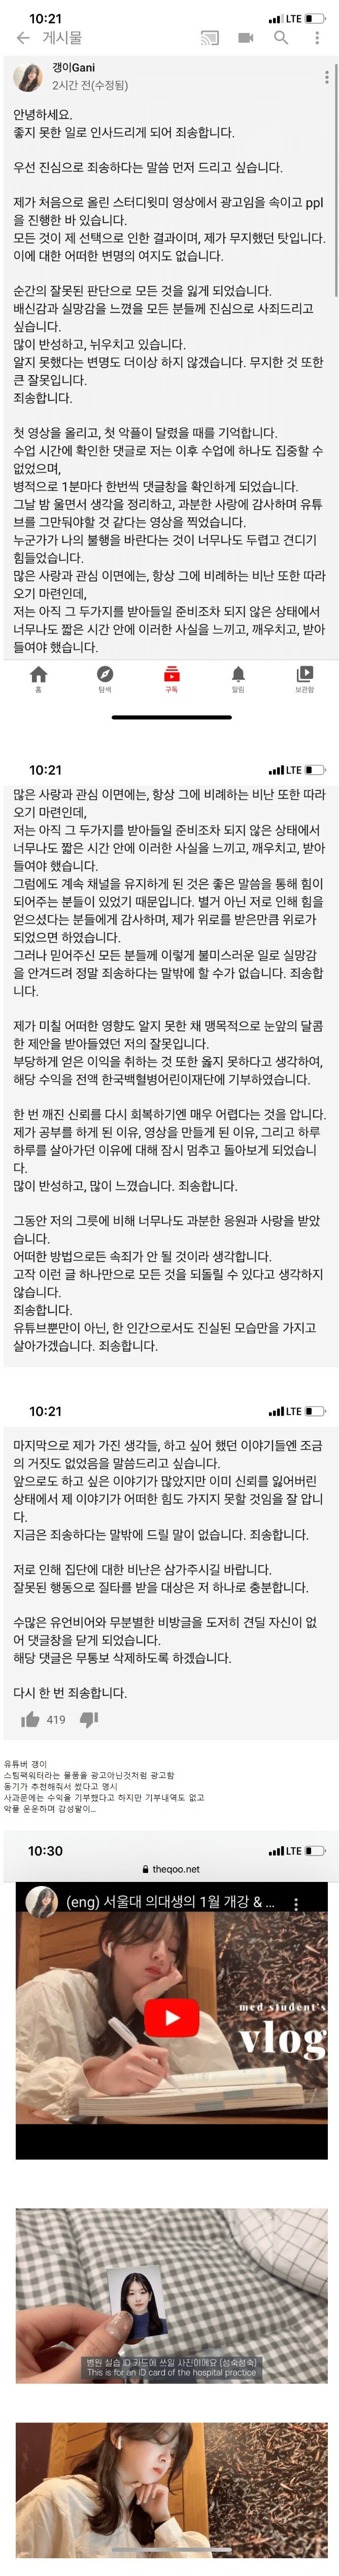 1596809036589915.jpg 뒷광고 사죄글 올리는 서울대 의대녀.jpg